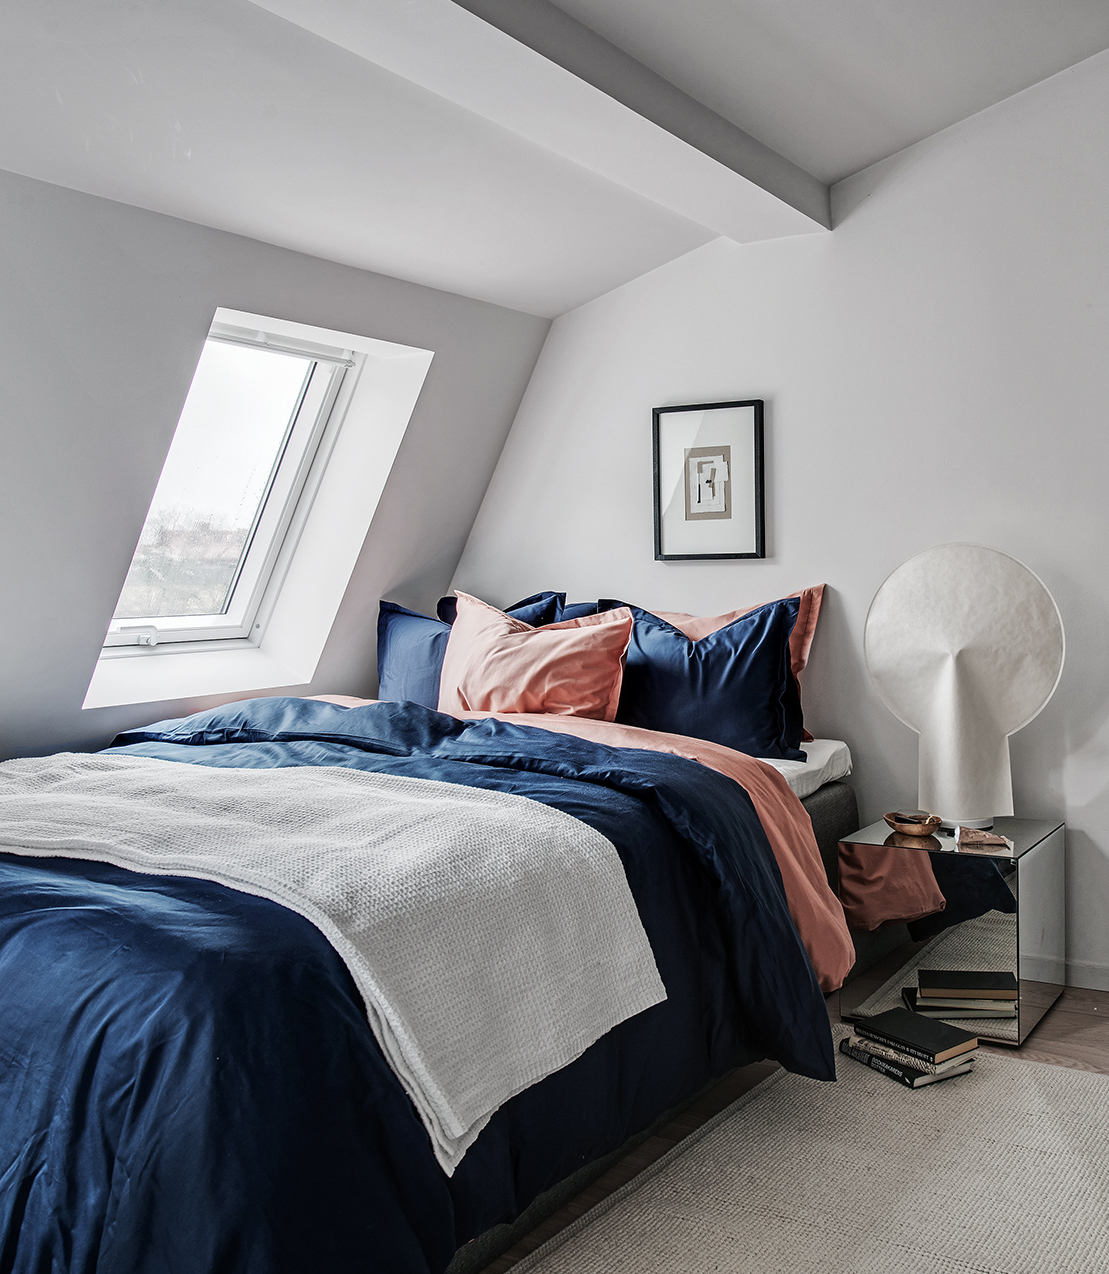 idée déco studio chambre lit bleu marine coussin rose saumon orange tapis beige toit blanc parquet blond - blog déco - clem around the corner